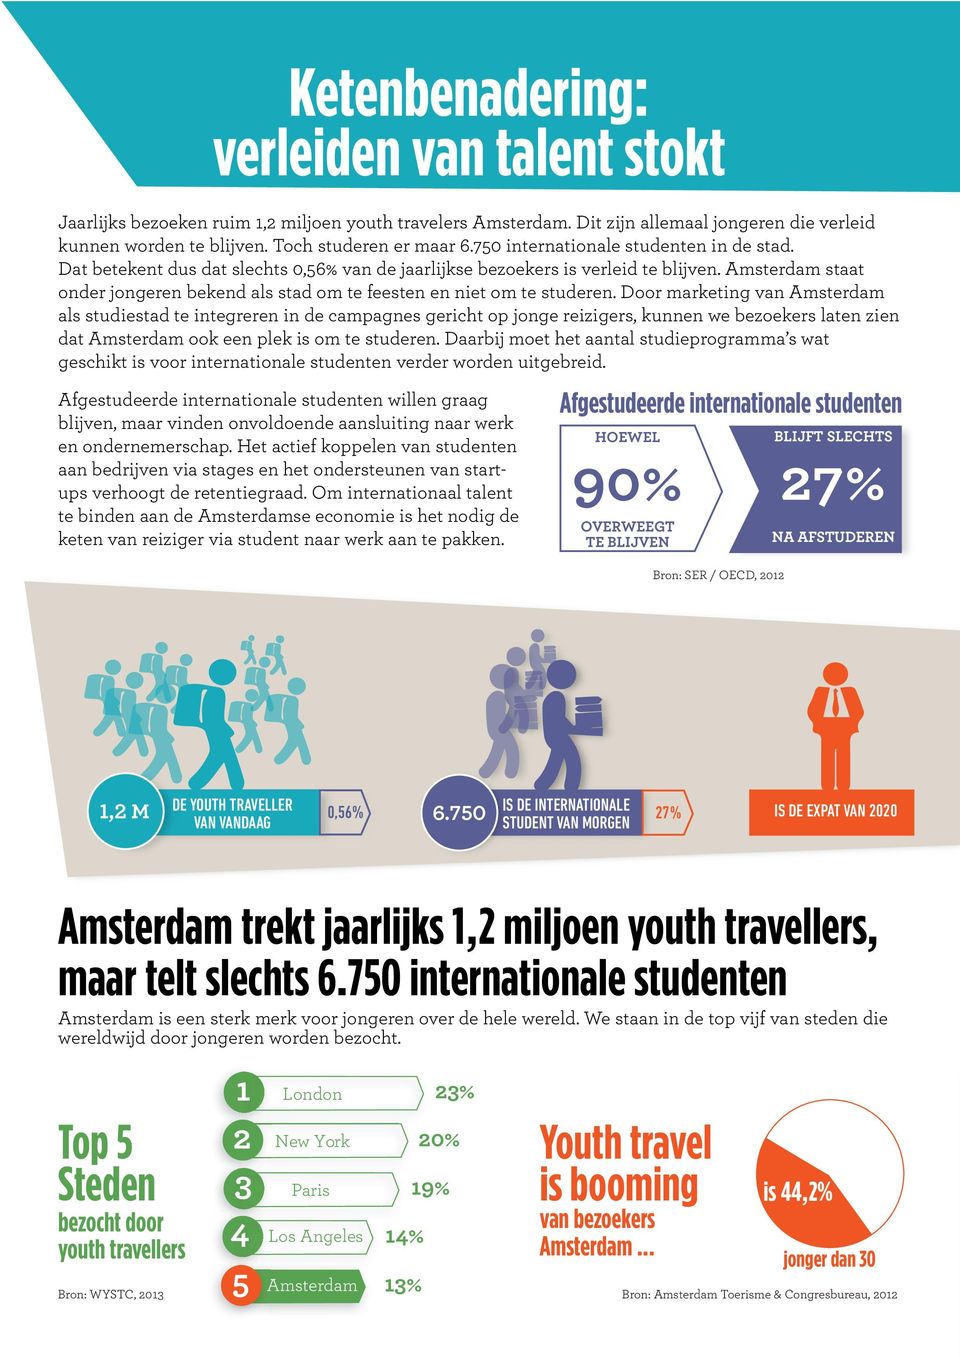 Amsterdam staat onder jongeren bekend als stad om te feesten en niet om te studeren.